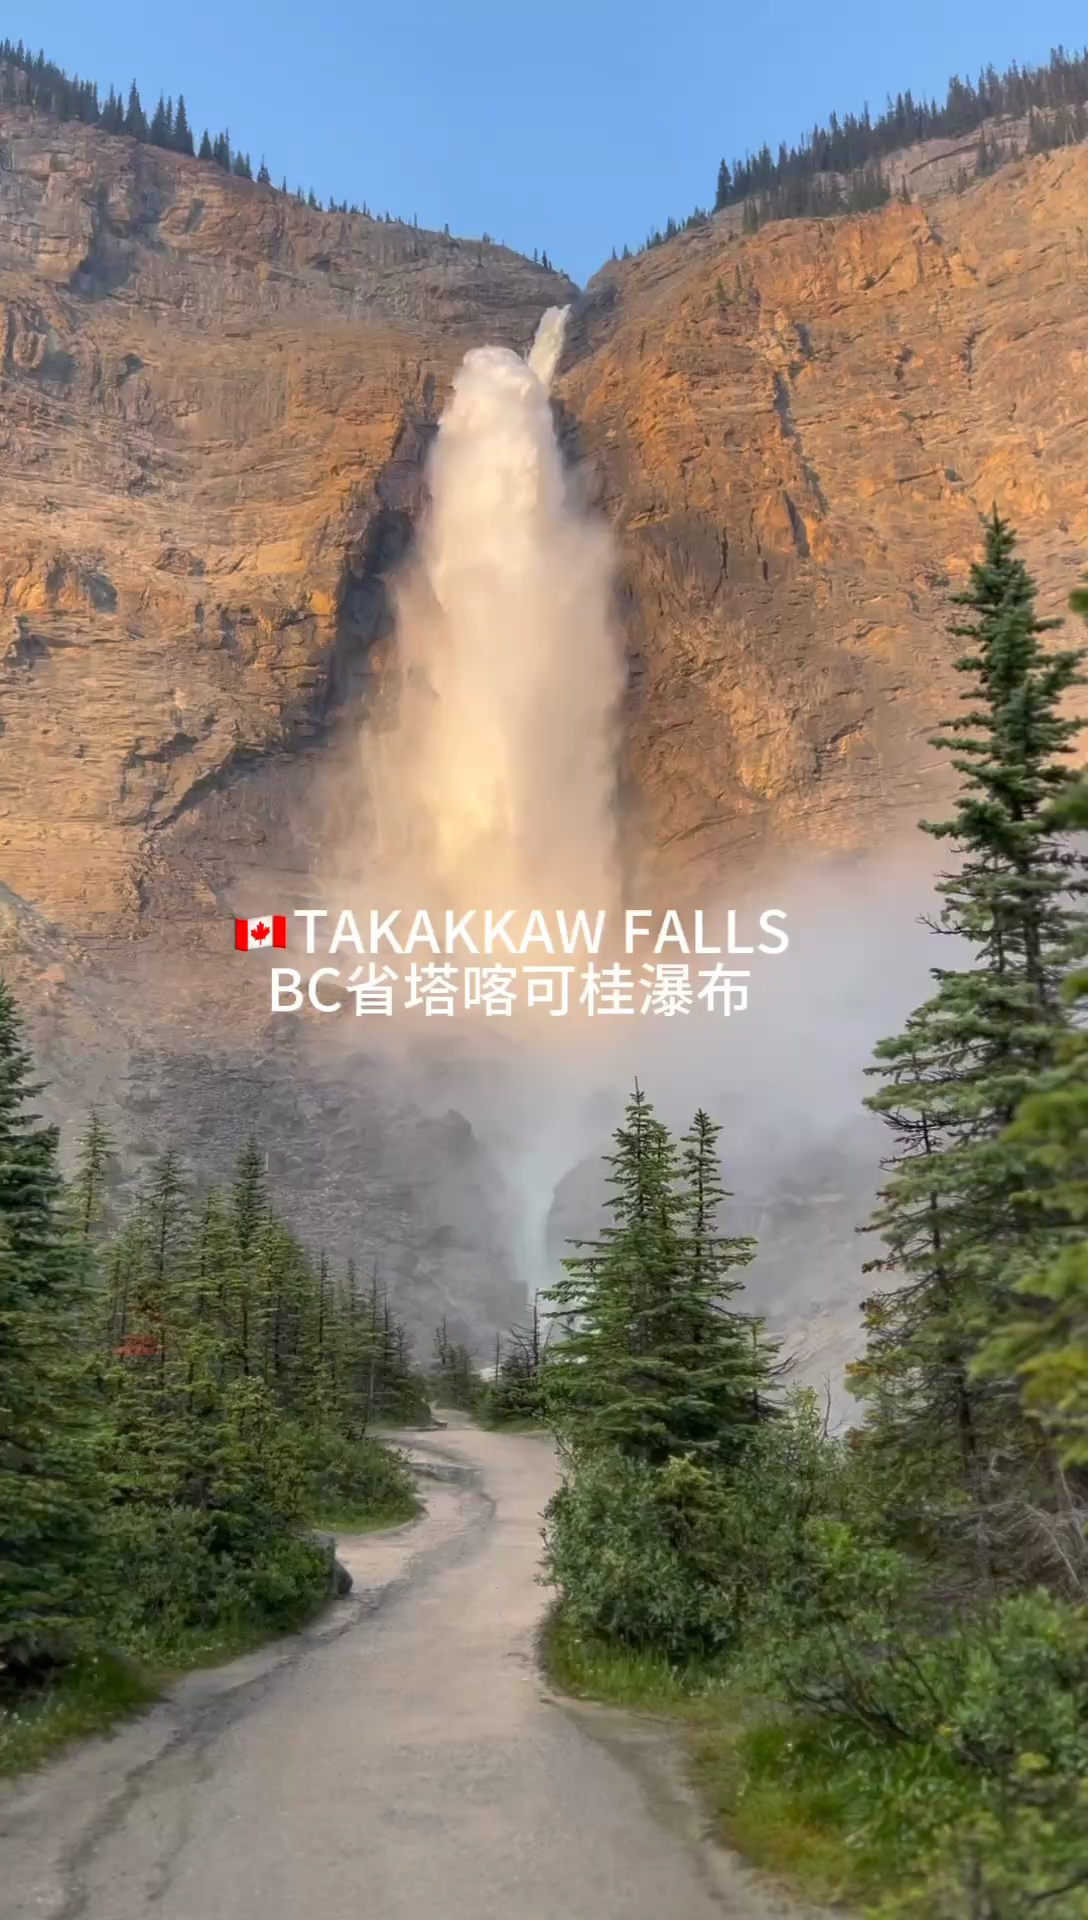 加拿大无比壮观的塔喀可桂瀑布